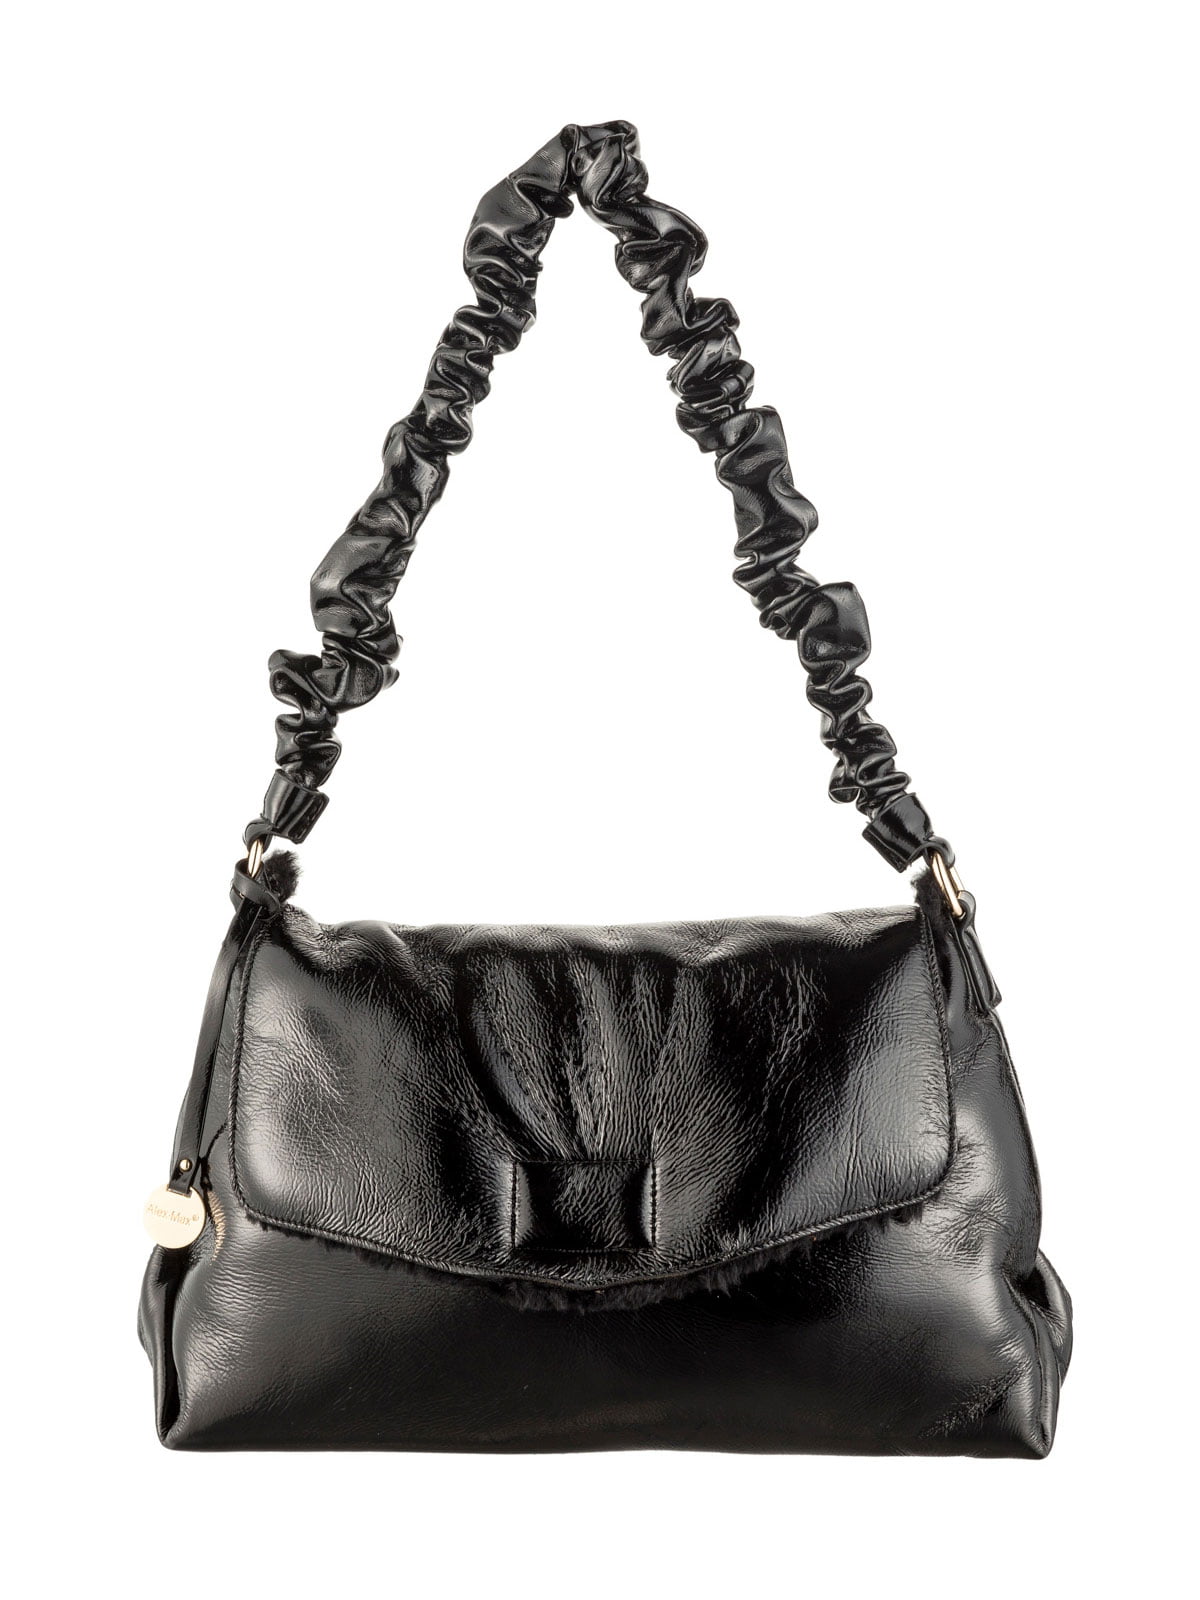 Alex Max - Alex Max Women's Shoulder Bag, Black, One-Size - Walmart.com ...